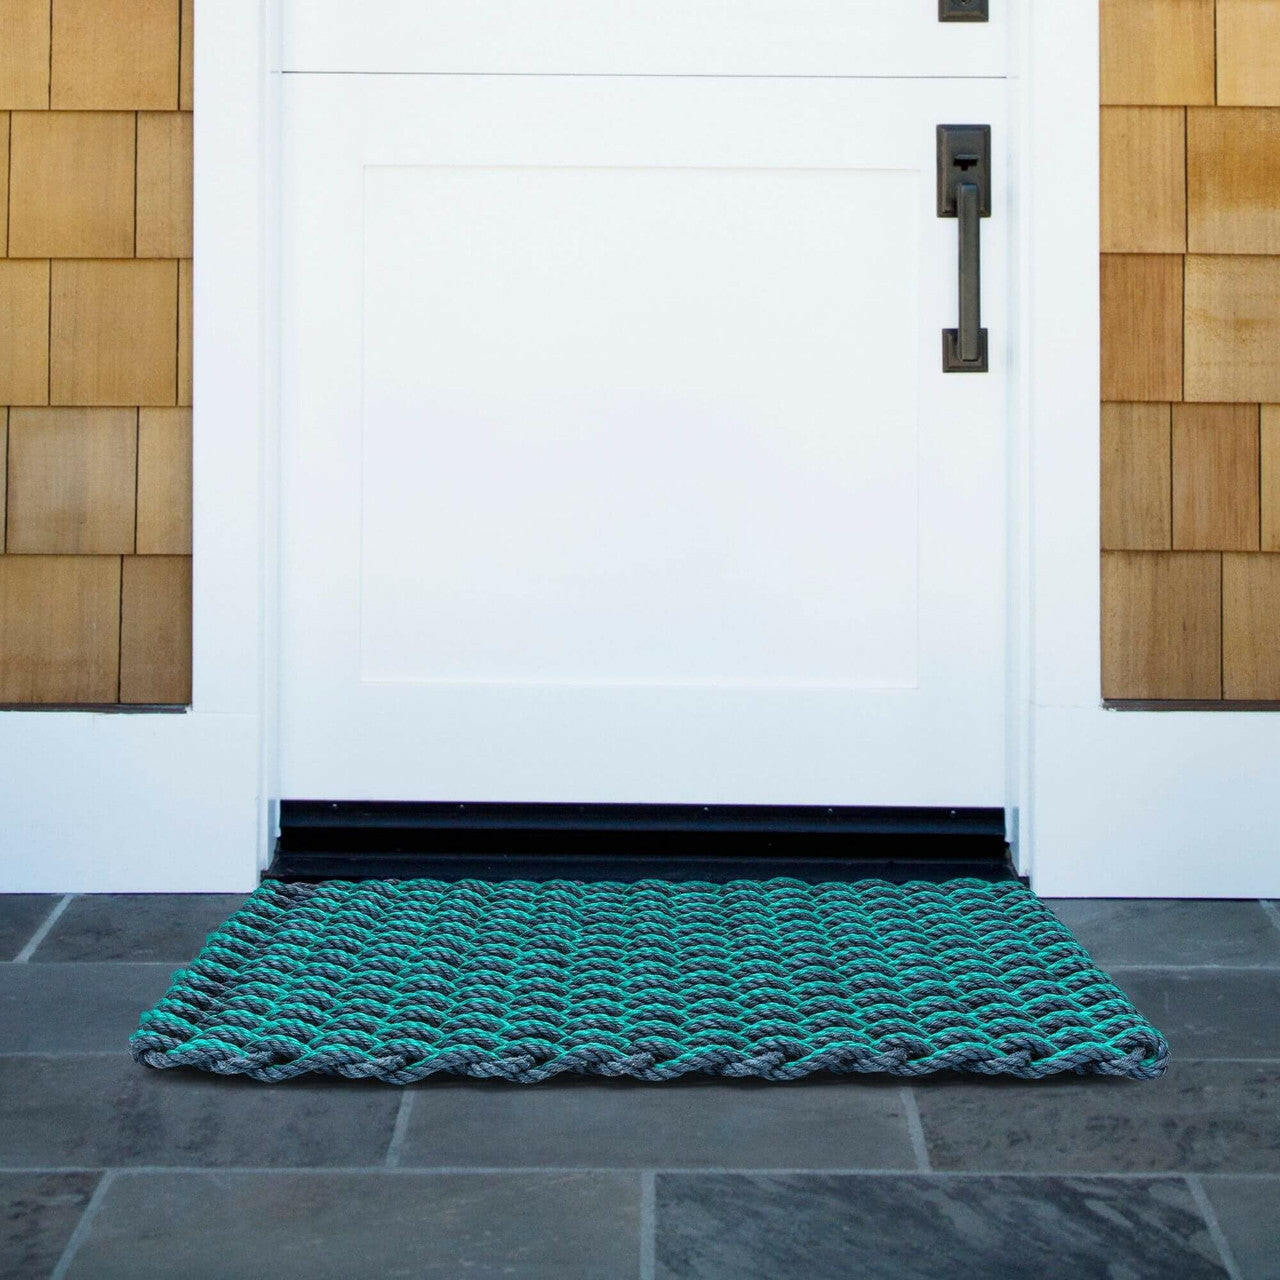 Lobster Rope Doormats, Outdoor Door Mats, Wicked Good Door Mats Made in Maine, Navy & Teal Double Weave, Front Door View, Front Entrance